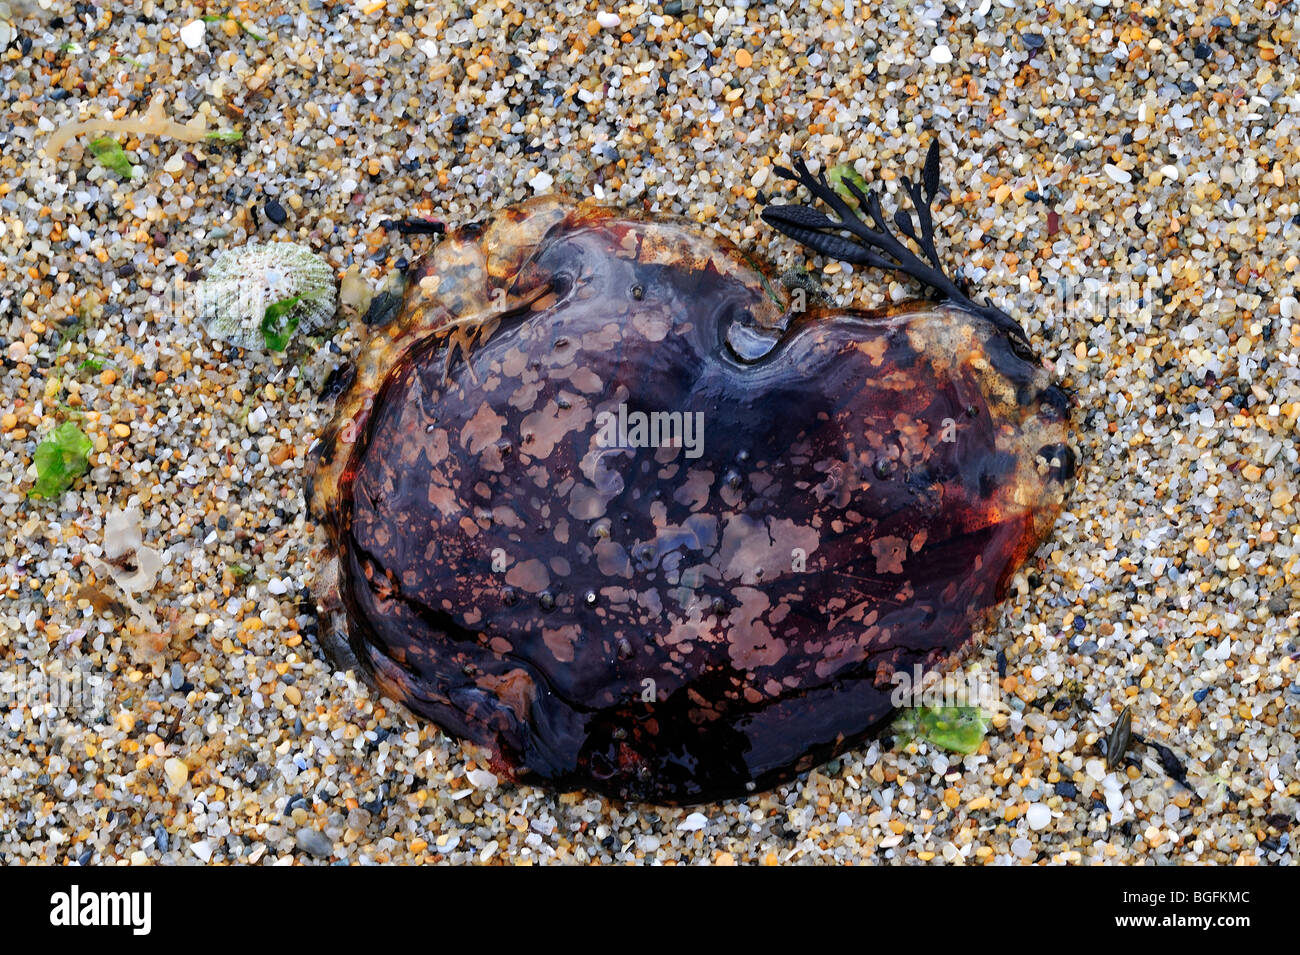 Leone la criniera meduse / capelli jelly (Cyanea capillata) si è incagliata sulla spiaggia, Brittany, Francia Foto Stock